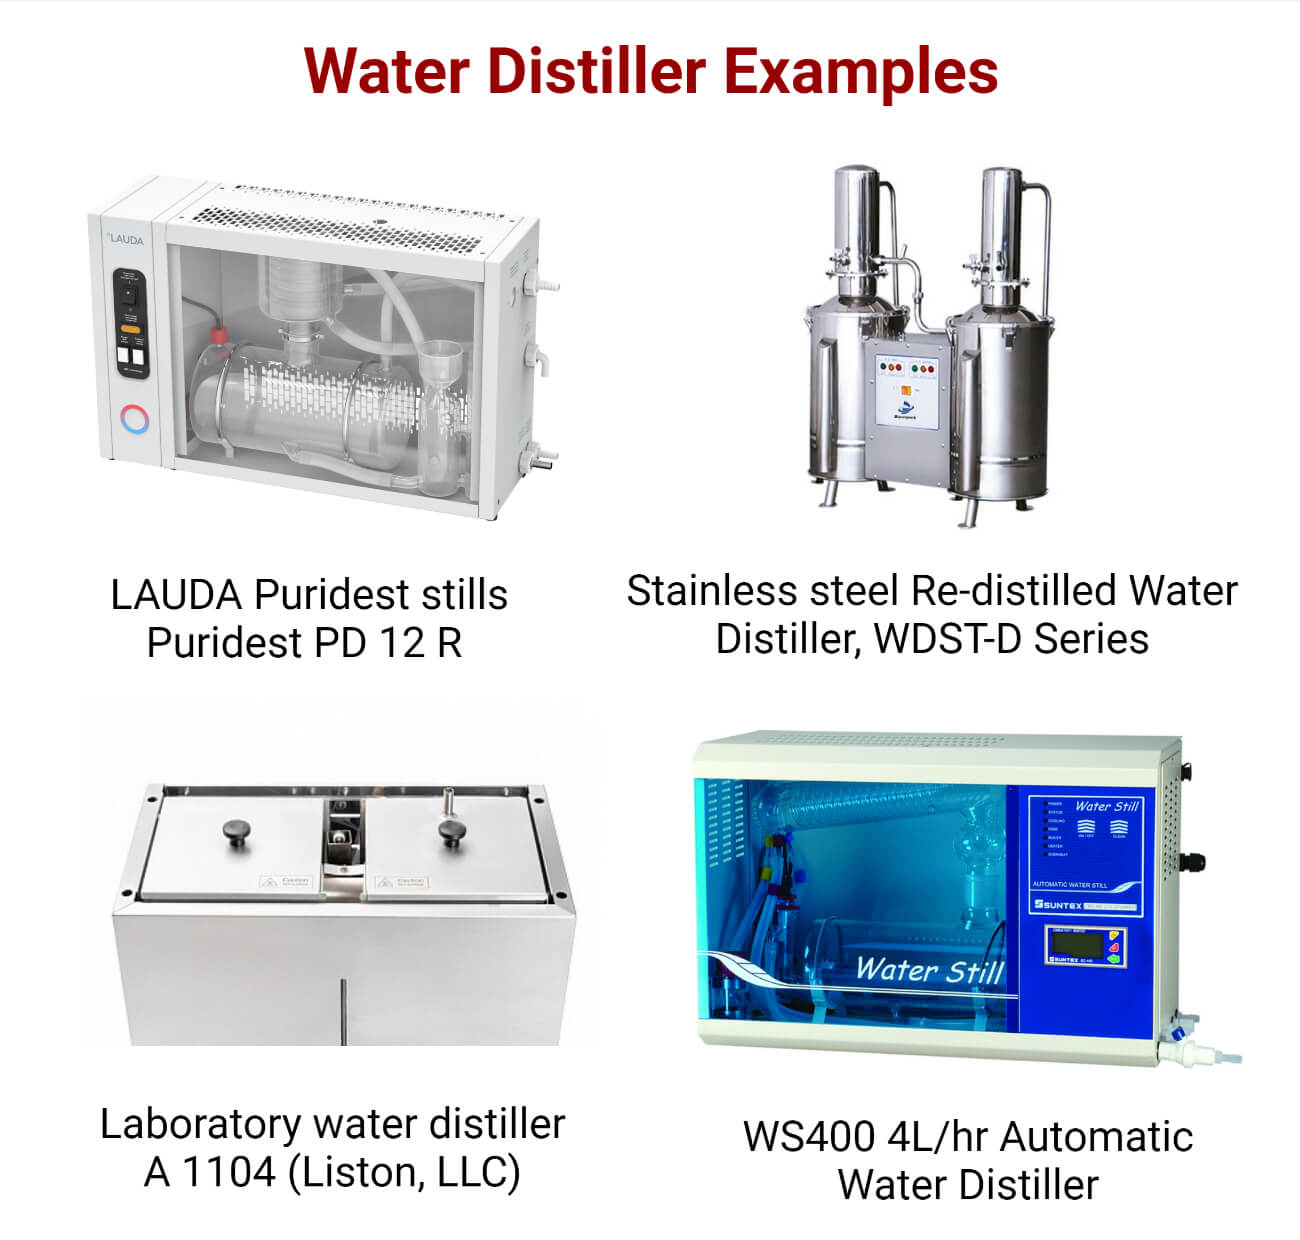 Water Distiller Examples